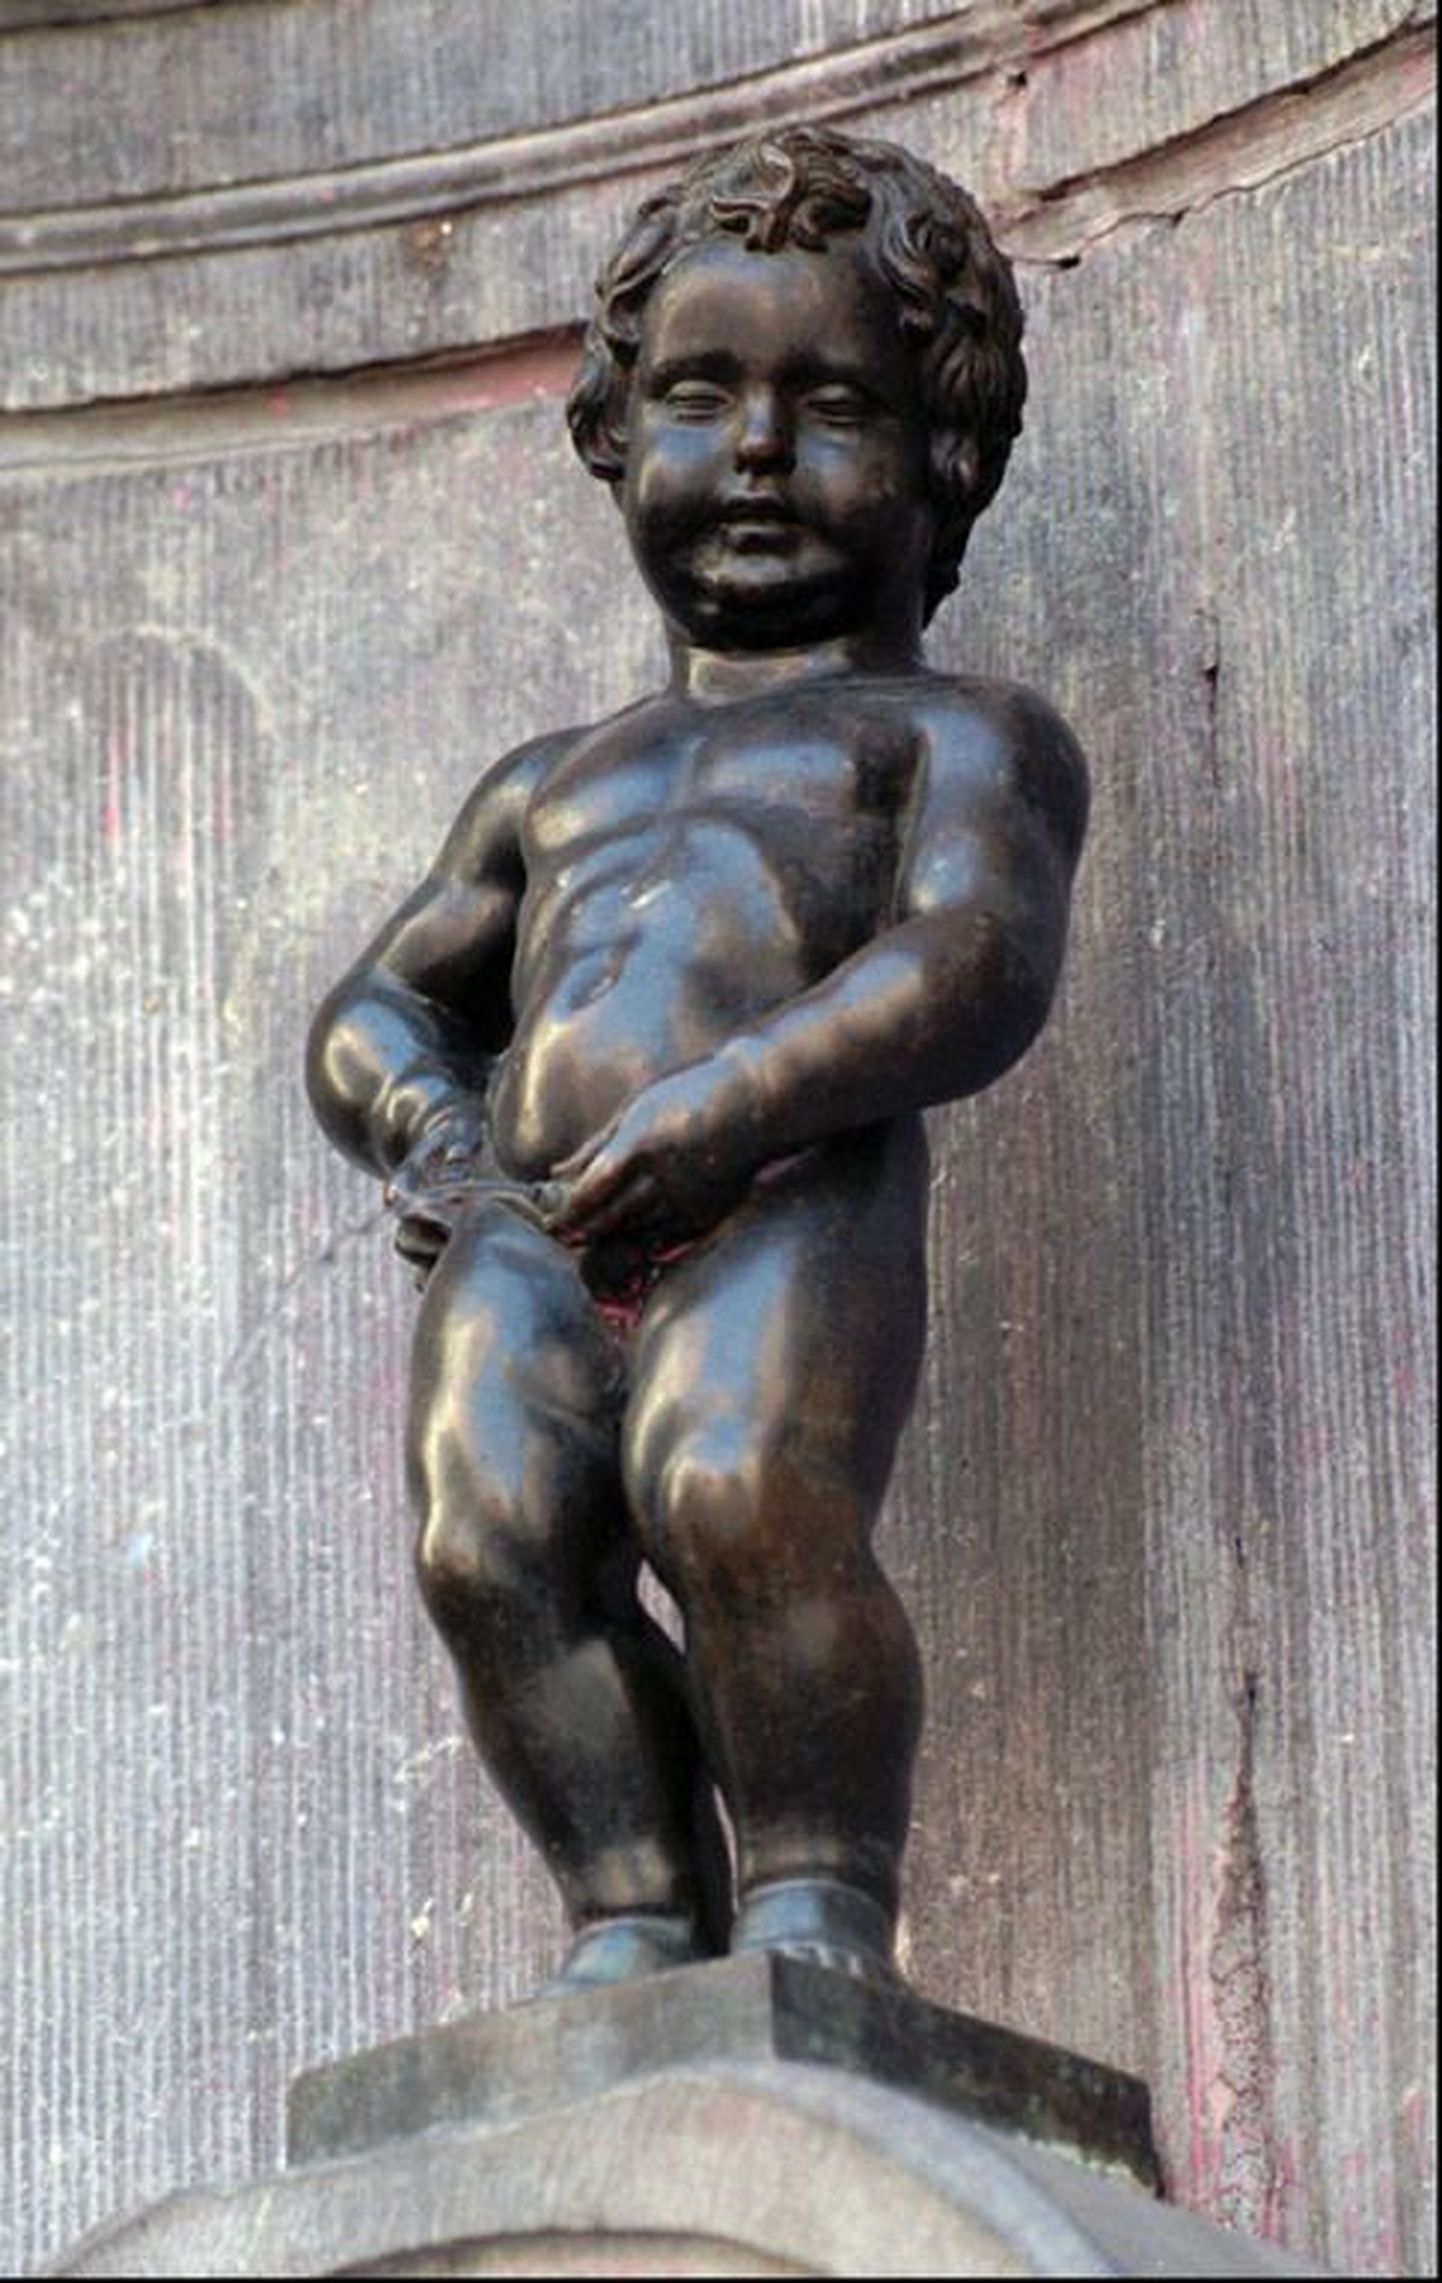 Brüsseli pissiv poiss ehk Manneken Pis